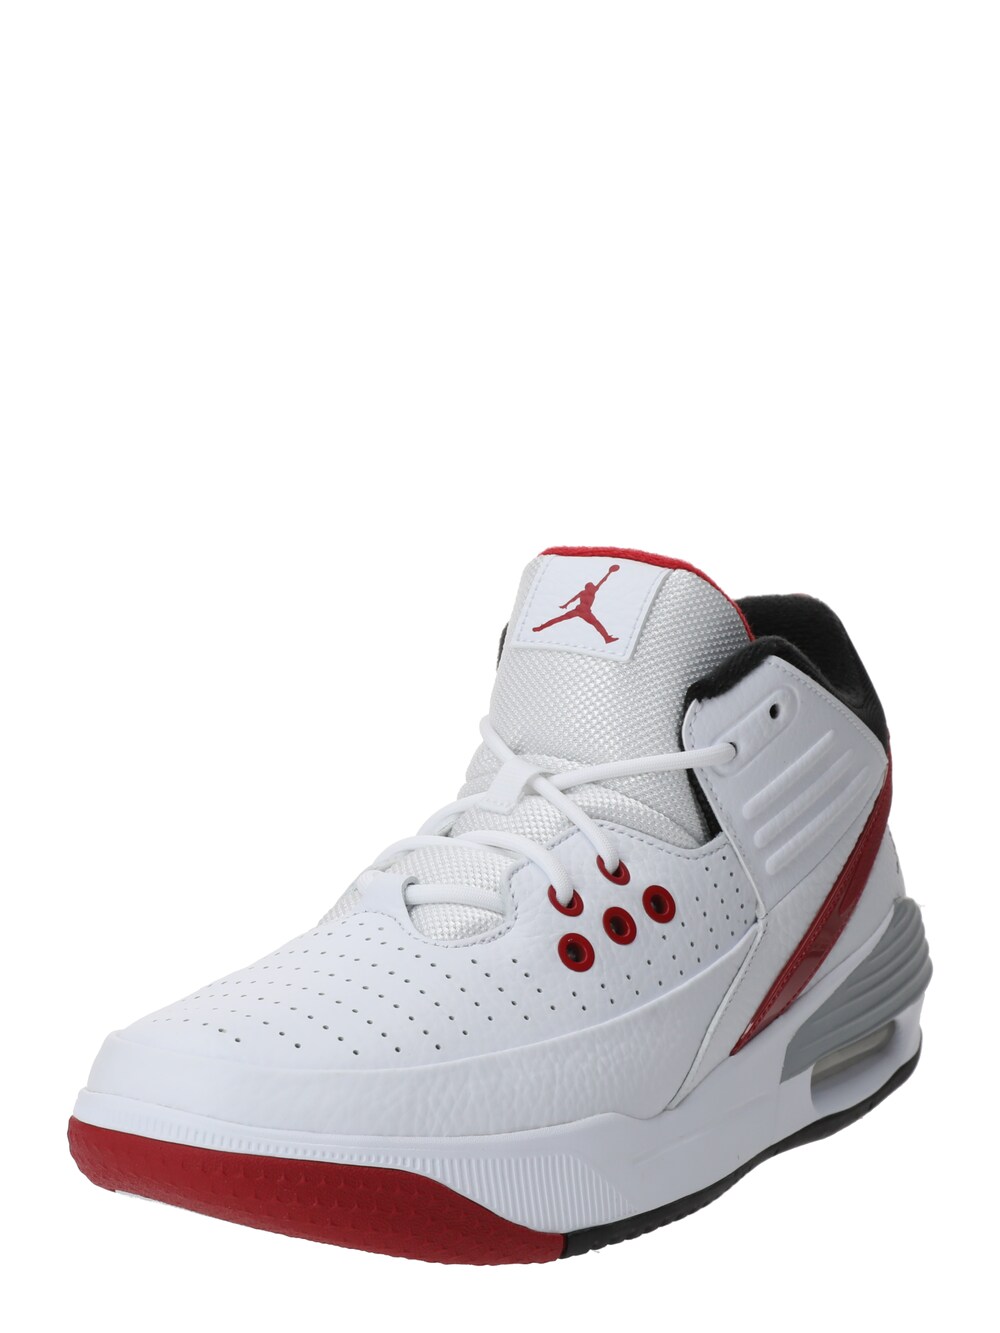 Высокие кроссовки Jordan Max Aura 5, белый высокие кеды jordan max aura 4 jordan белый черный красный